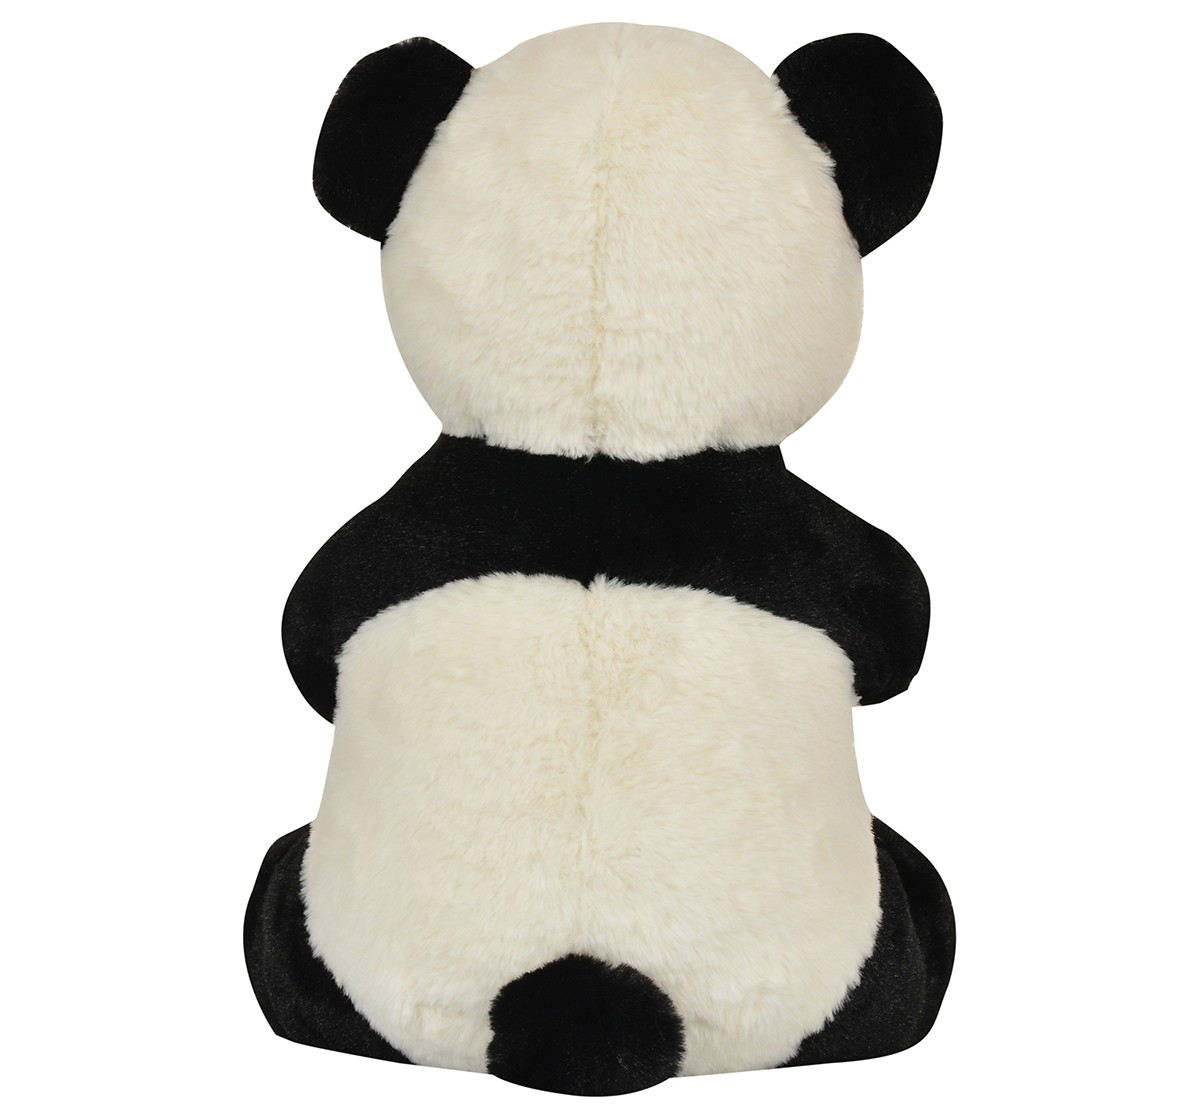 Mirada 35cm sitting panda soft toy Multicolor 3Y+